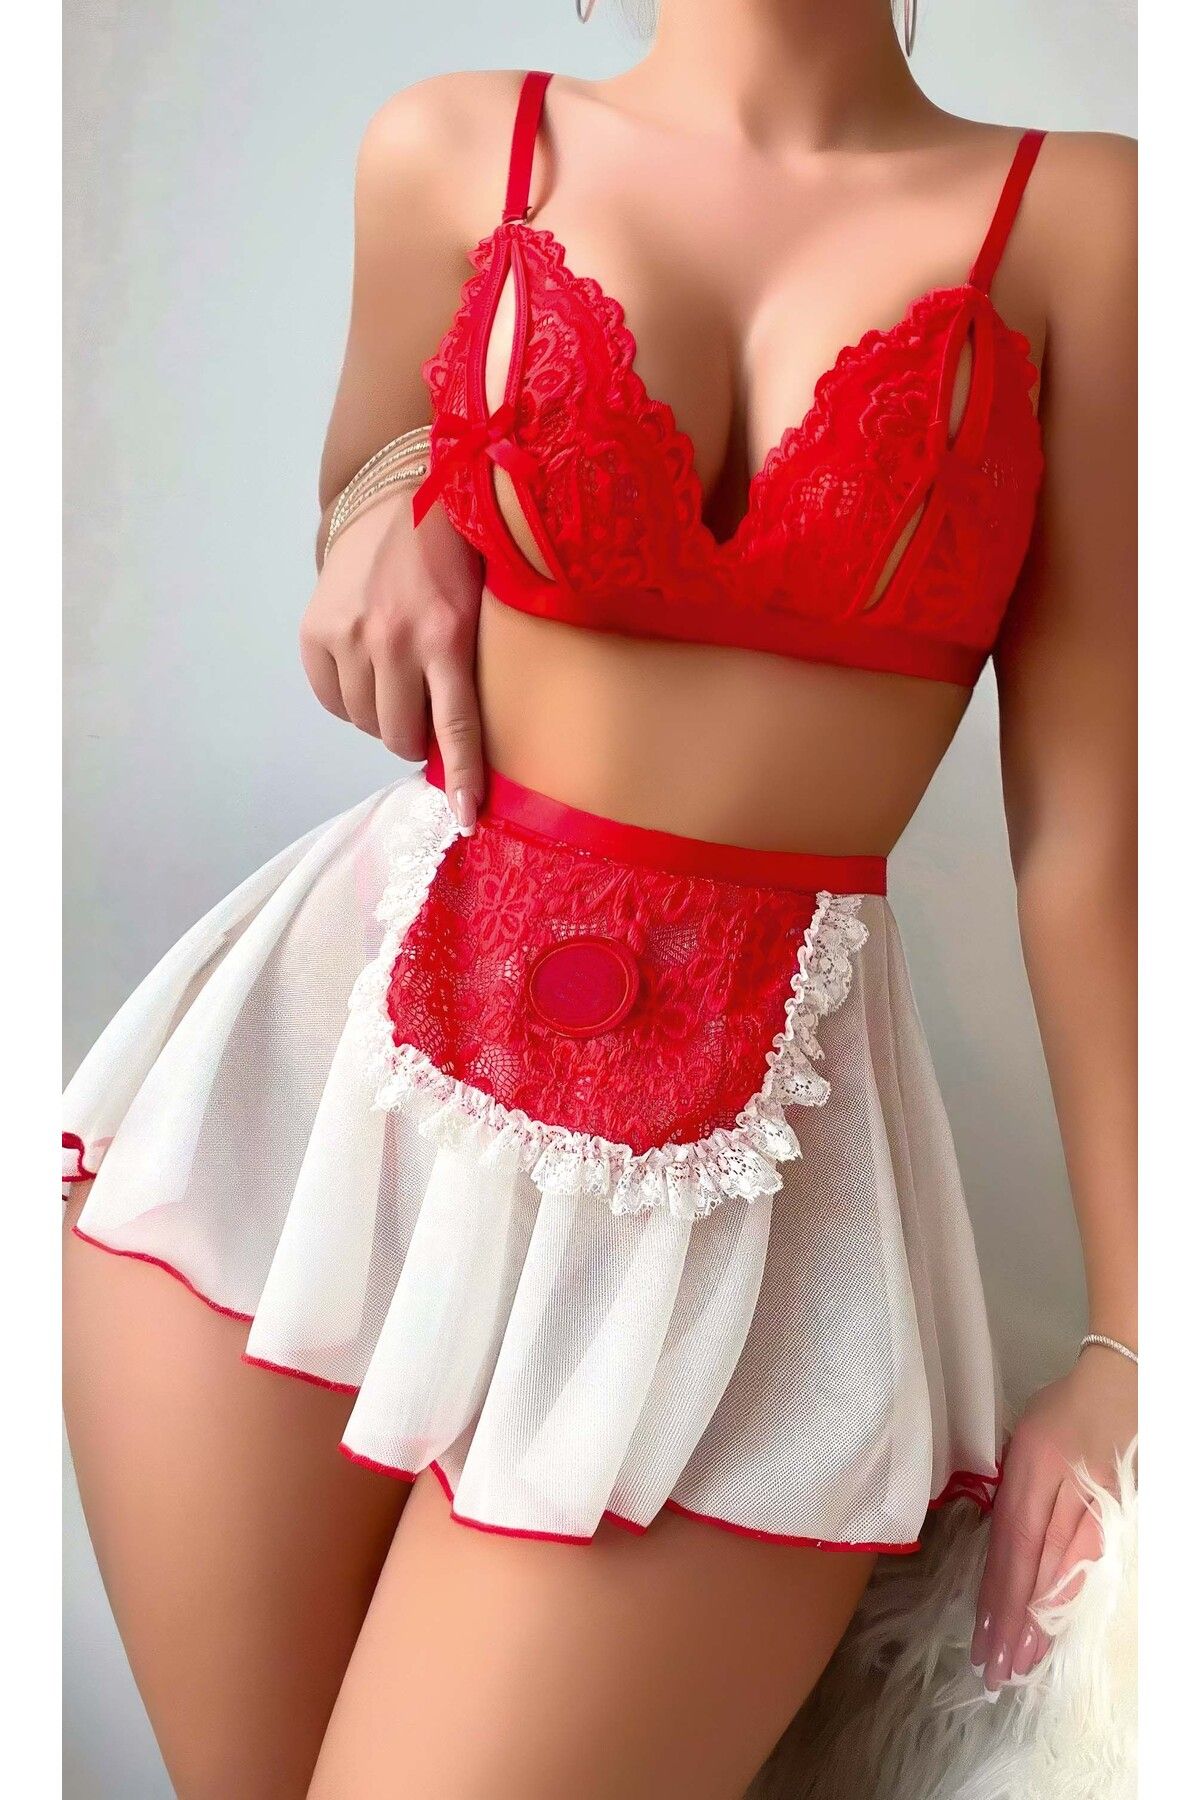 Veille Seksi Kırmızı Beyaz Etekli Hizmetçi Gecelik Kostüm,Erotik Hizmetçi Fantazi Üniforma,Bdsm,Erotic